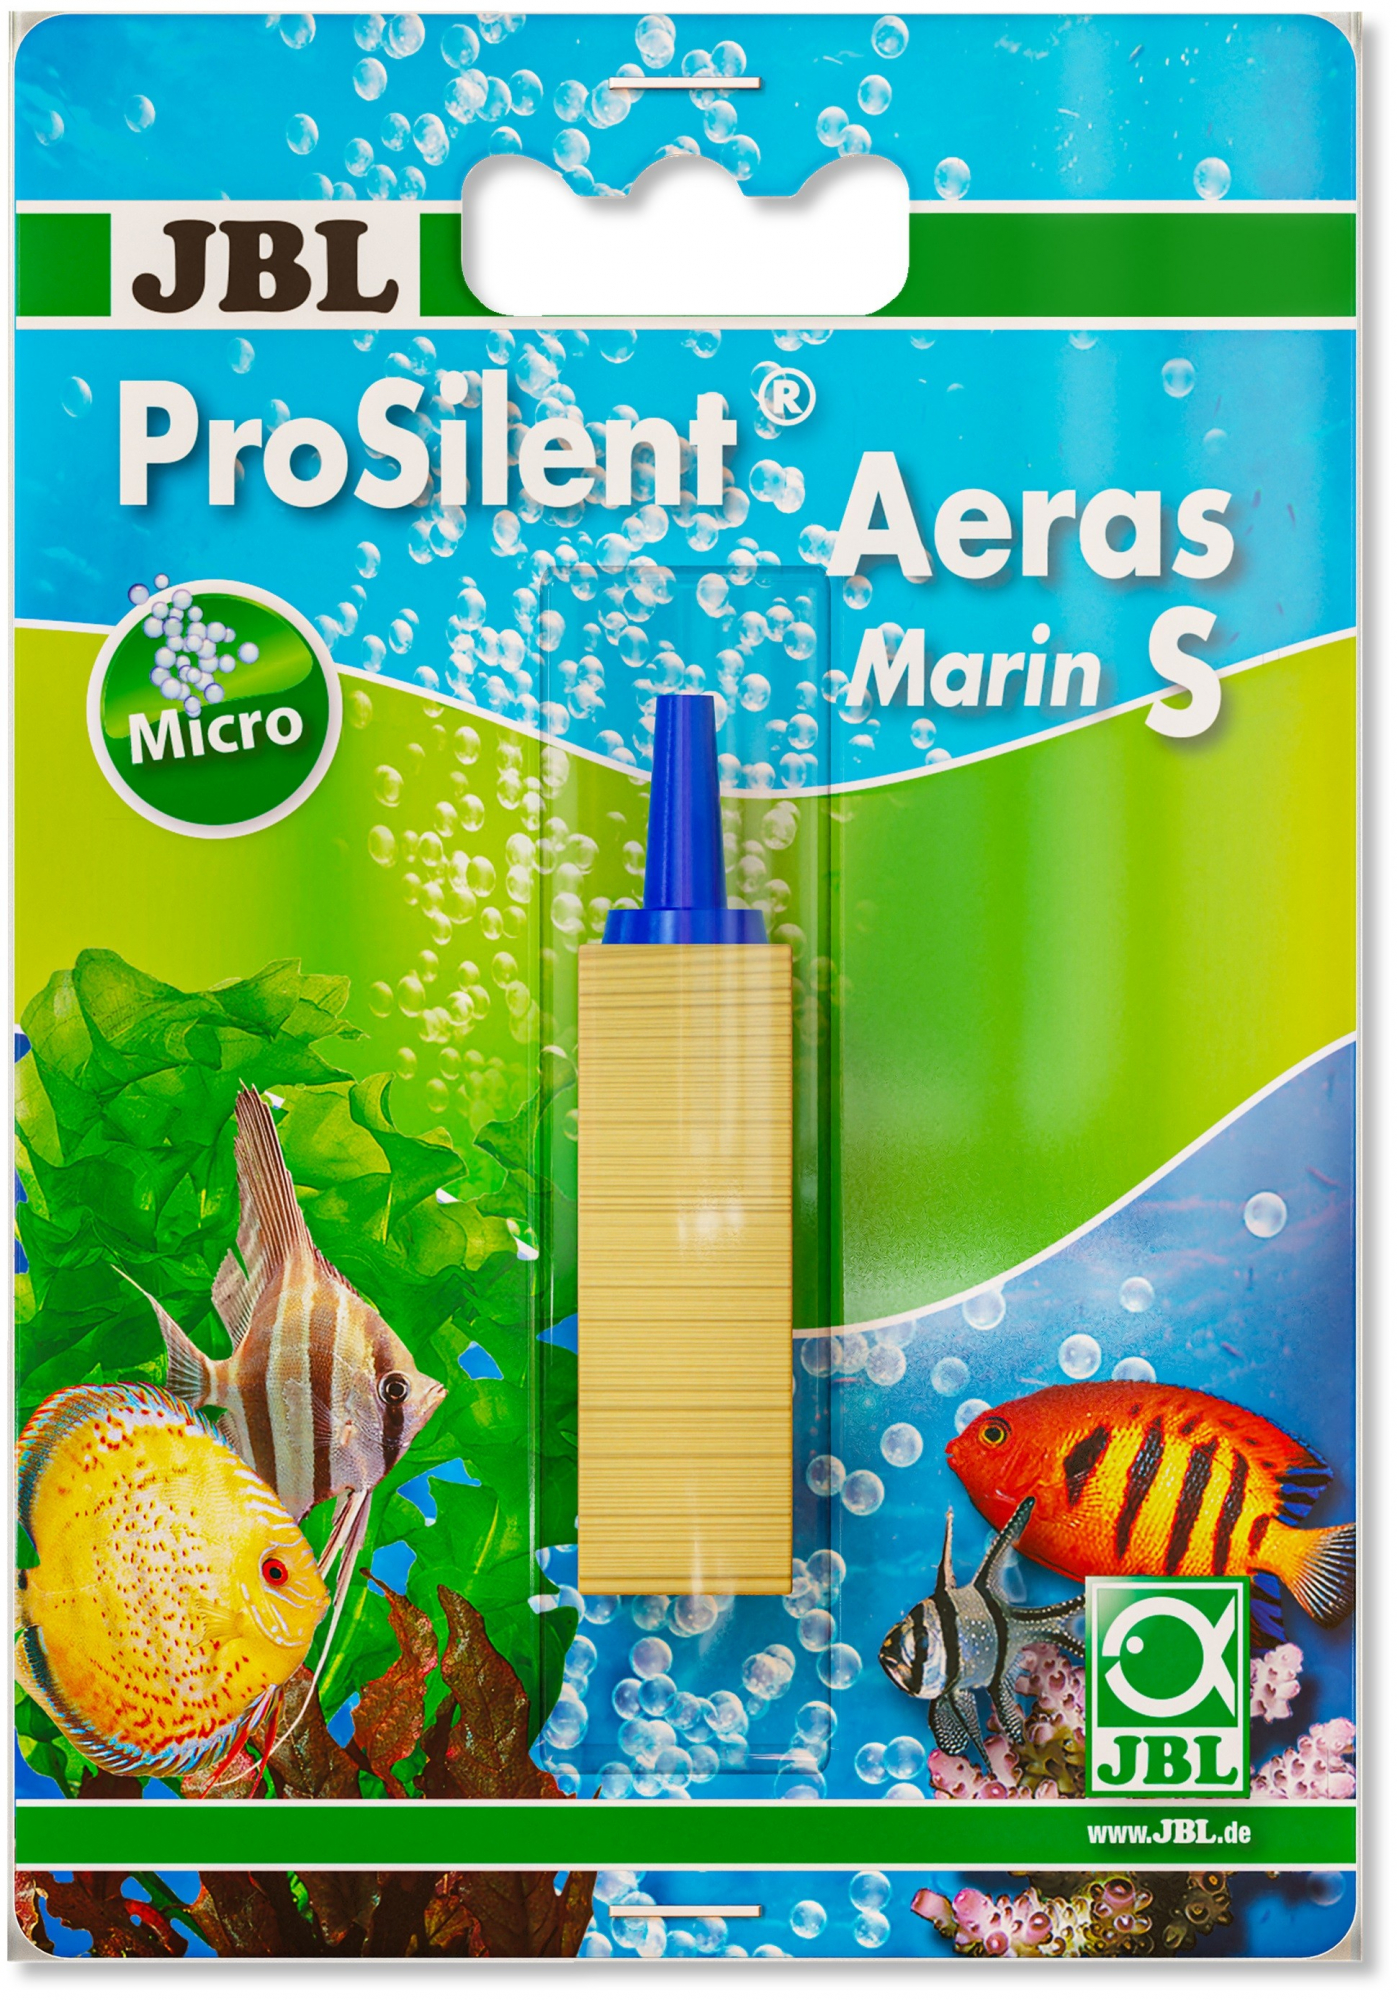 JBL ProSilent Aeras Marin, Difusor de ar em madeira para aquários de água salgada